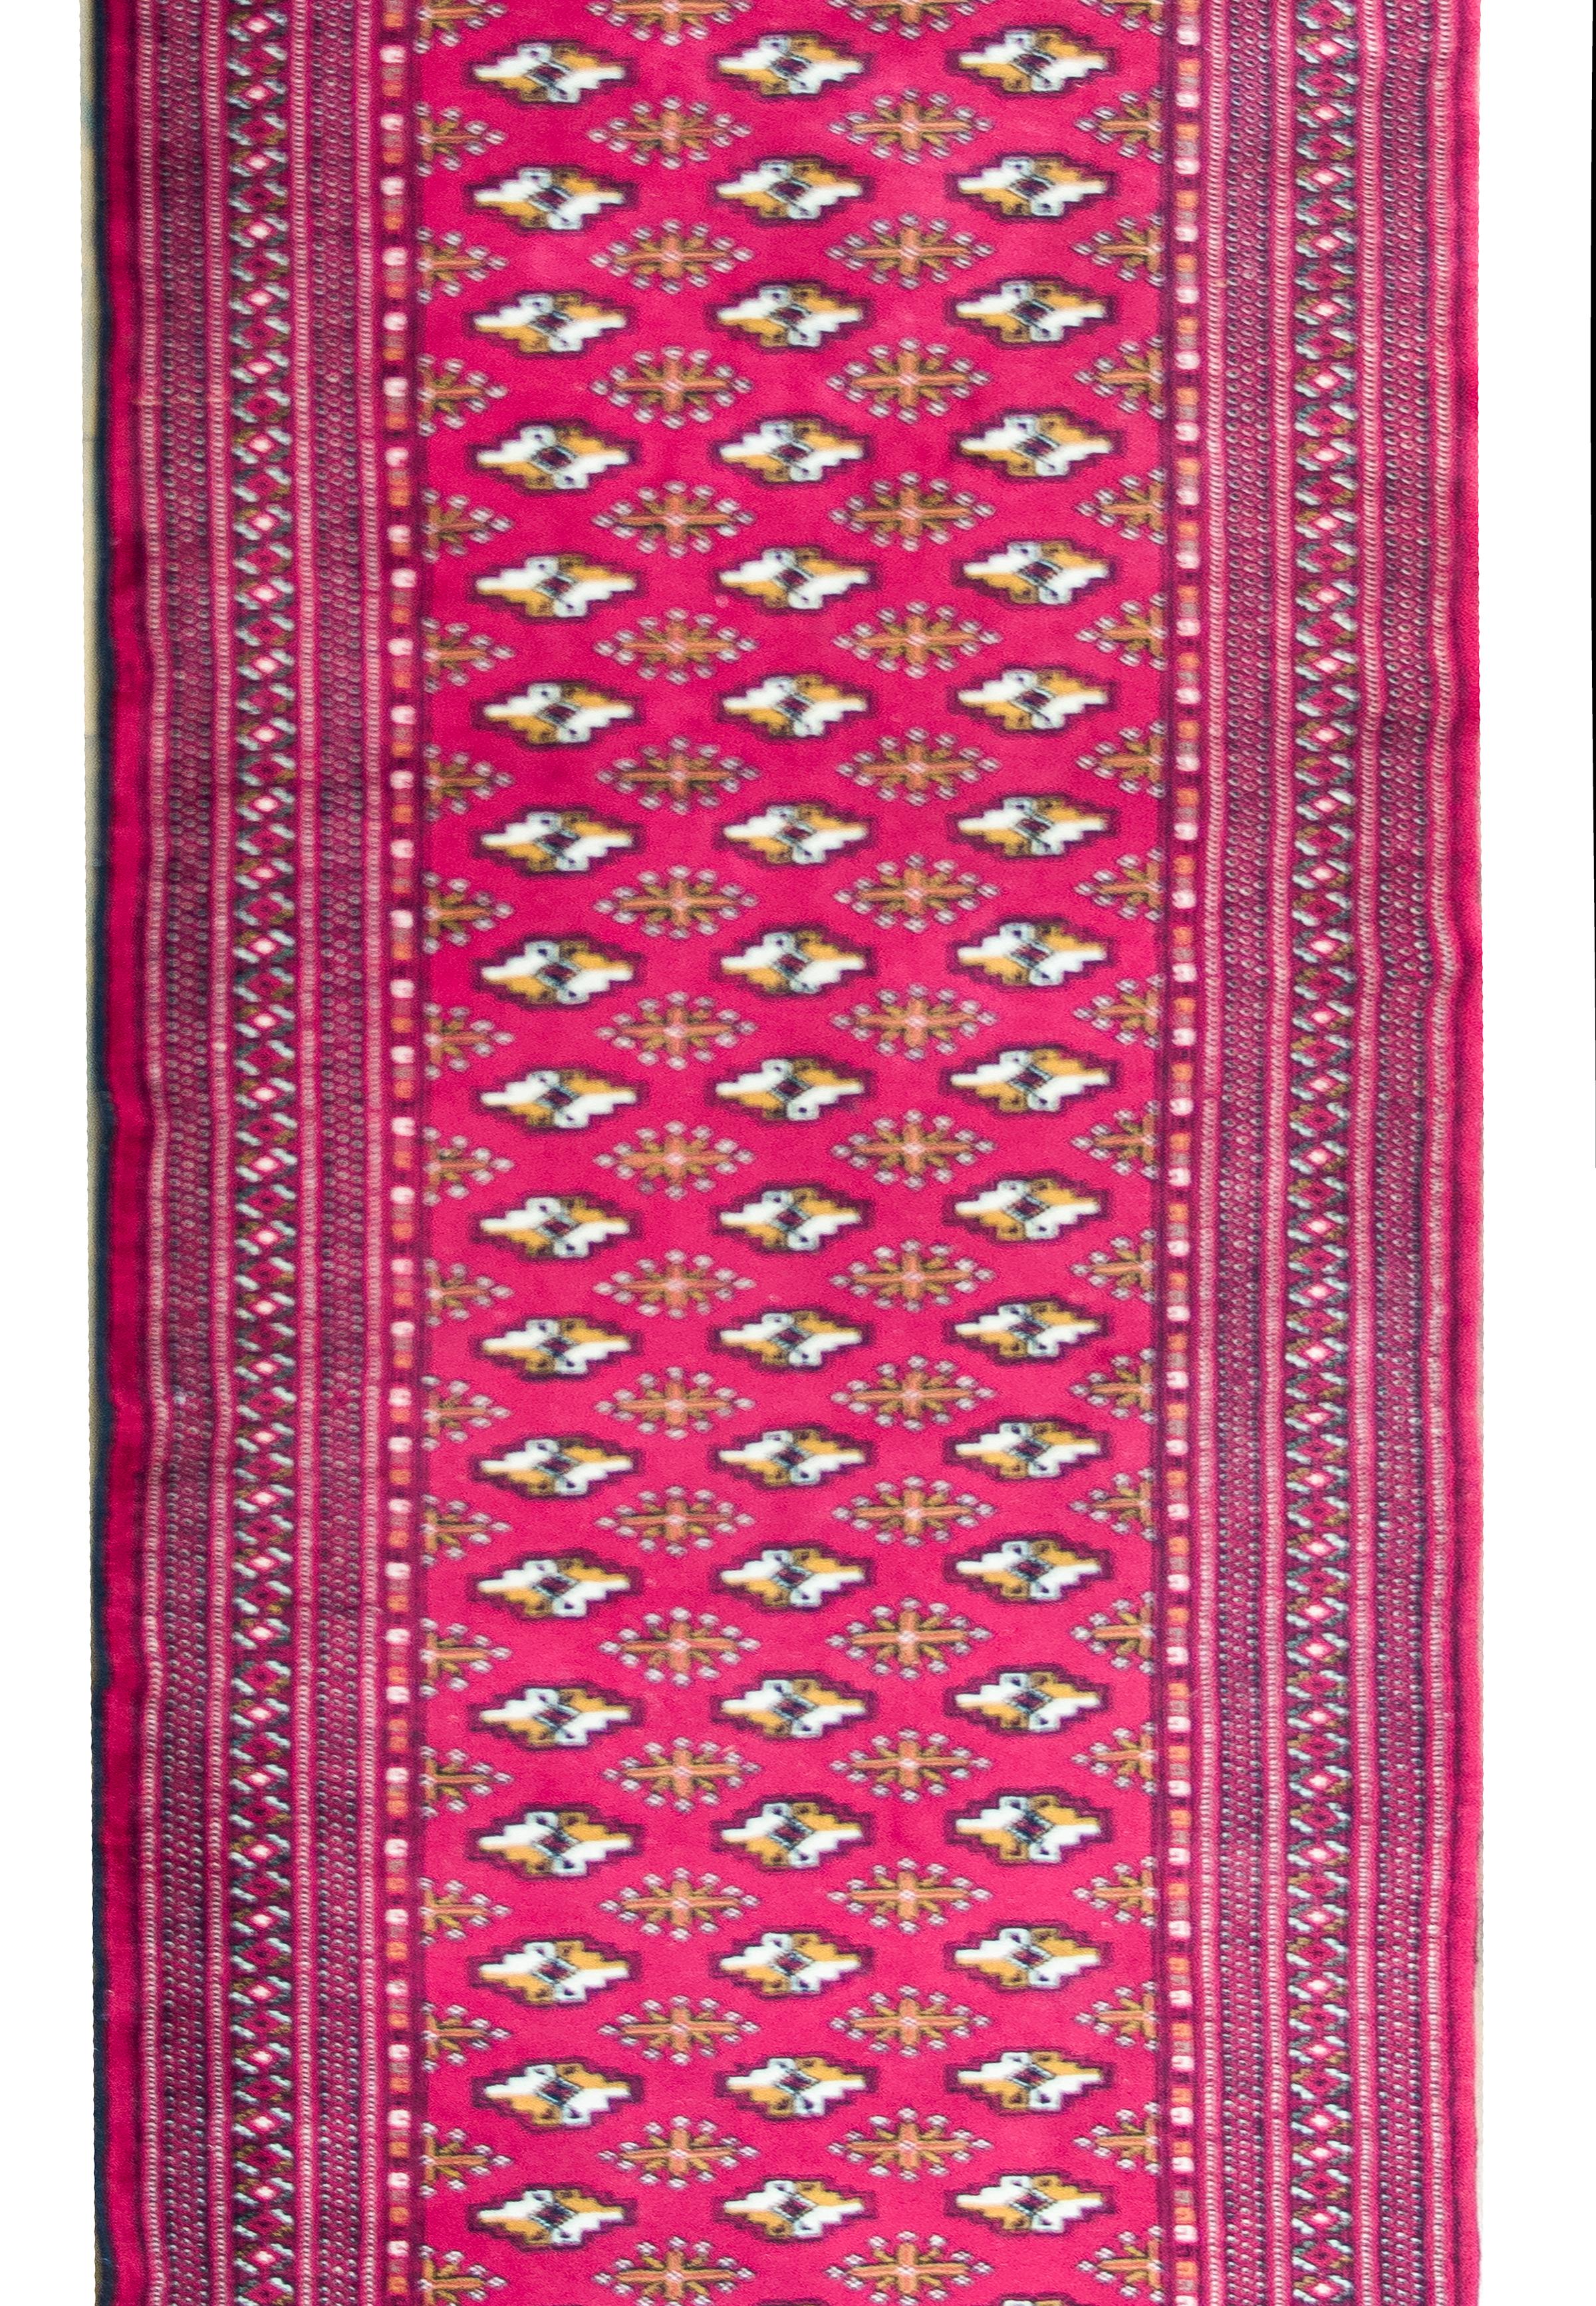 Ein wunderschöner persischer Turkan-Teppich im Vintage-Stil mit einem orangefarbenen und weißen Rautenmuster, gemischt mit stilisierten Blumen, vor einem dunkelkarminroten Hintergrund und umgeben von einer komplexen Bordüre aus mehreren kleinen